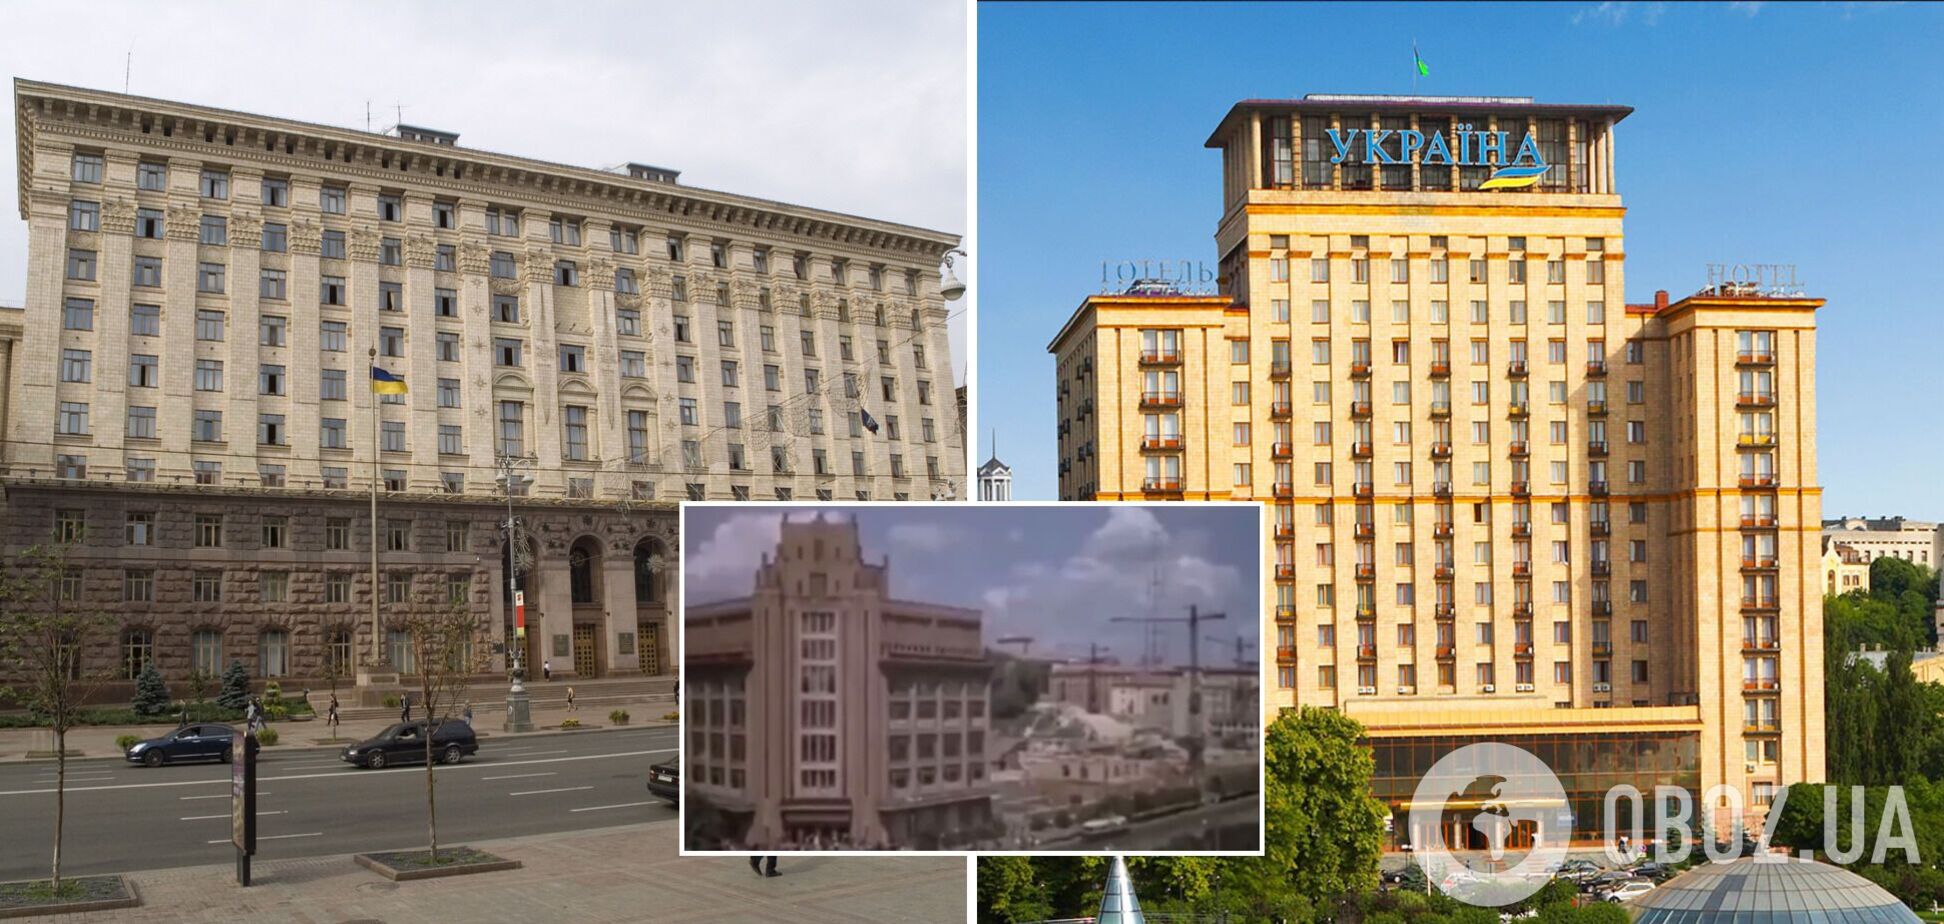 Зданий Киевсовета и отеля 'Украина' еще не существовало 